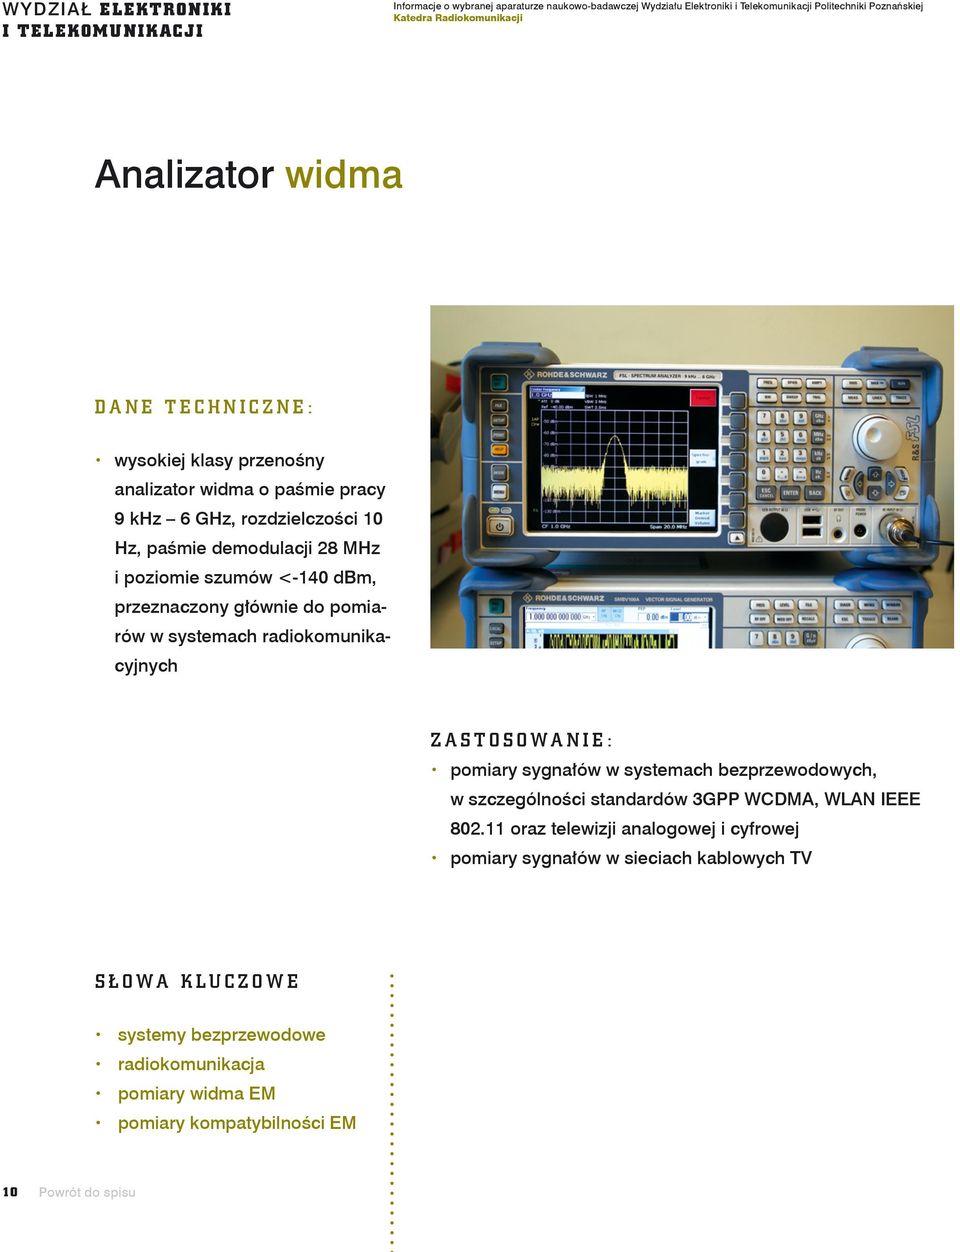 przeznaczony głównie do pomiarów w systemach radiokomunikacyjnych Zastosowanie: x pomiary sygnałów w systemach bezprzewodowych, w szczególności standardów 3GPP WCDMA, WLAN IEEE 802.